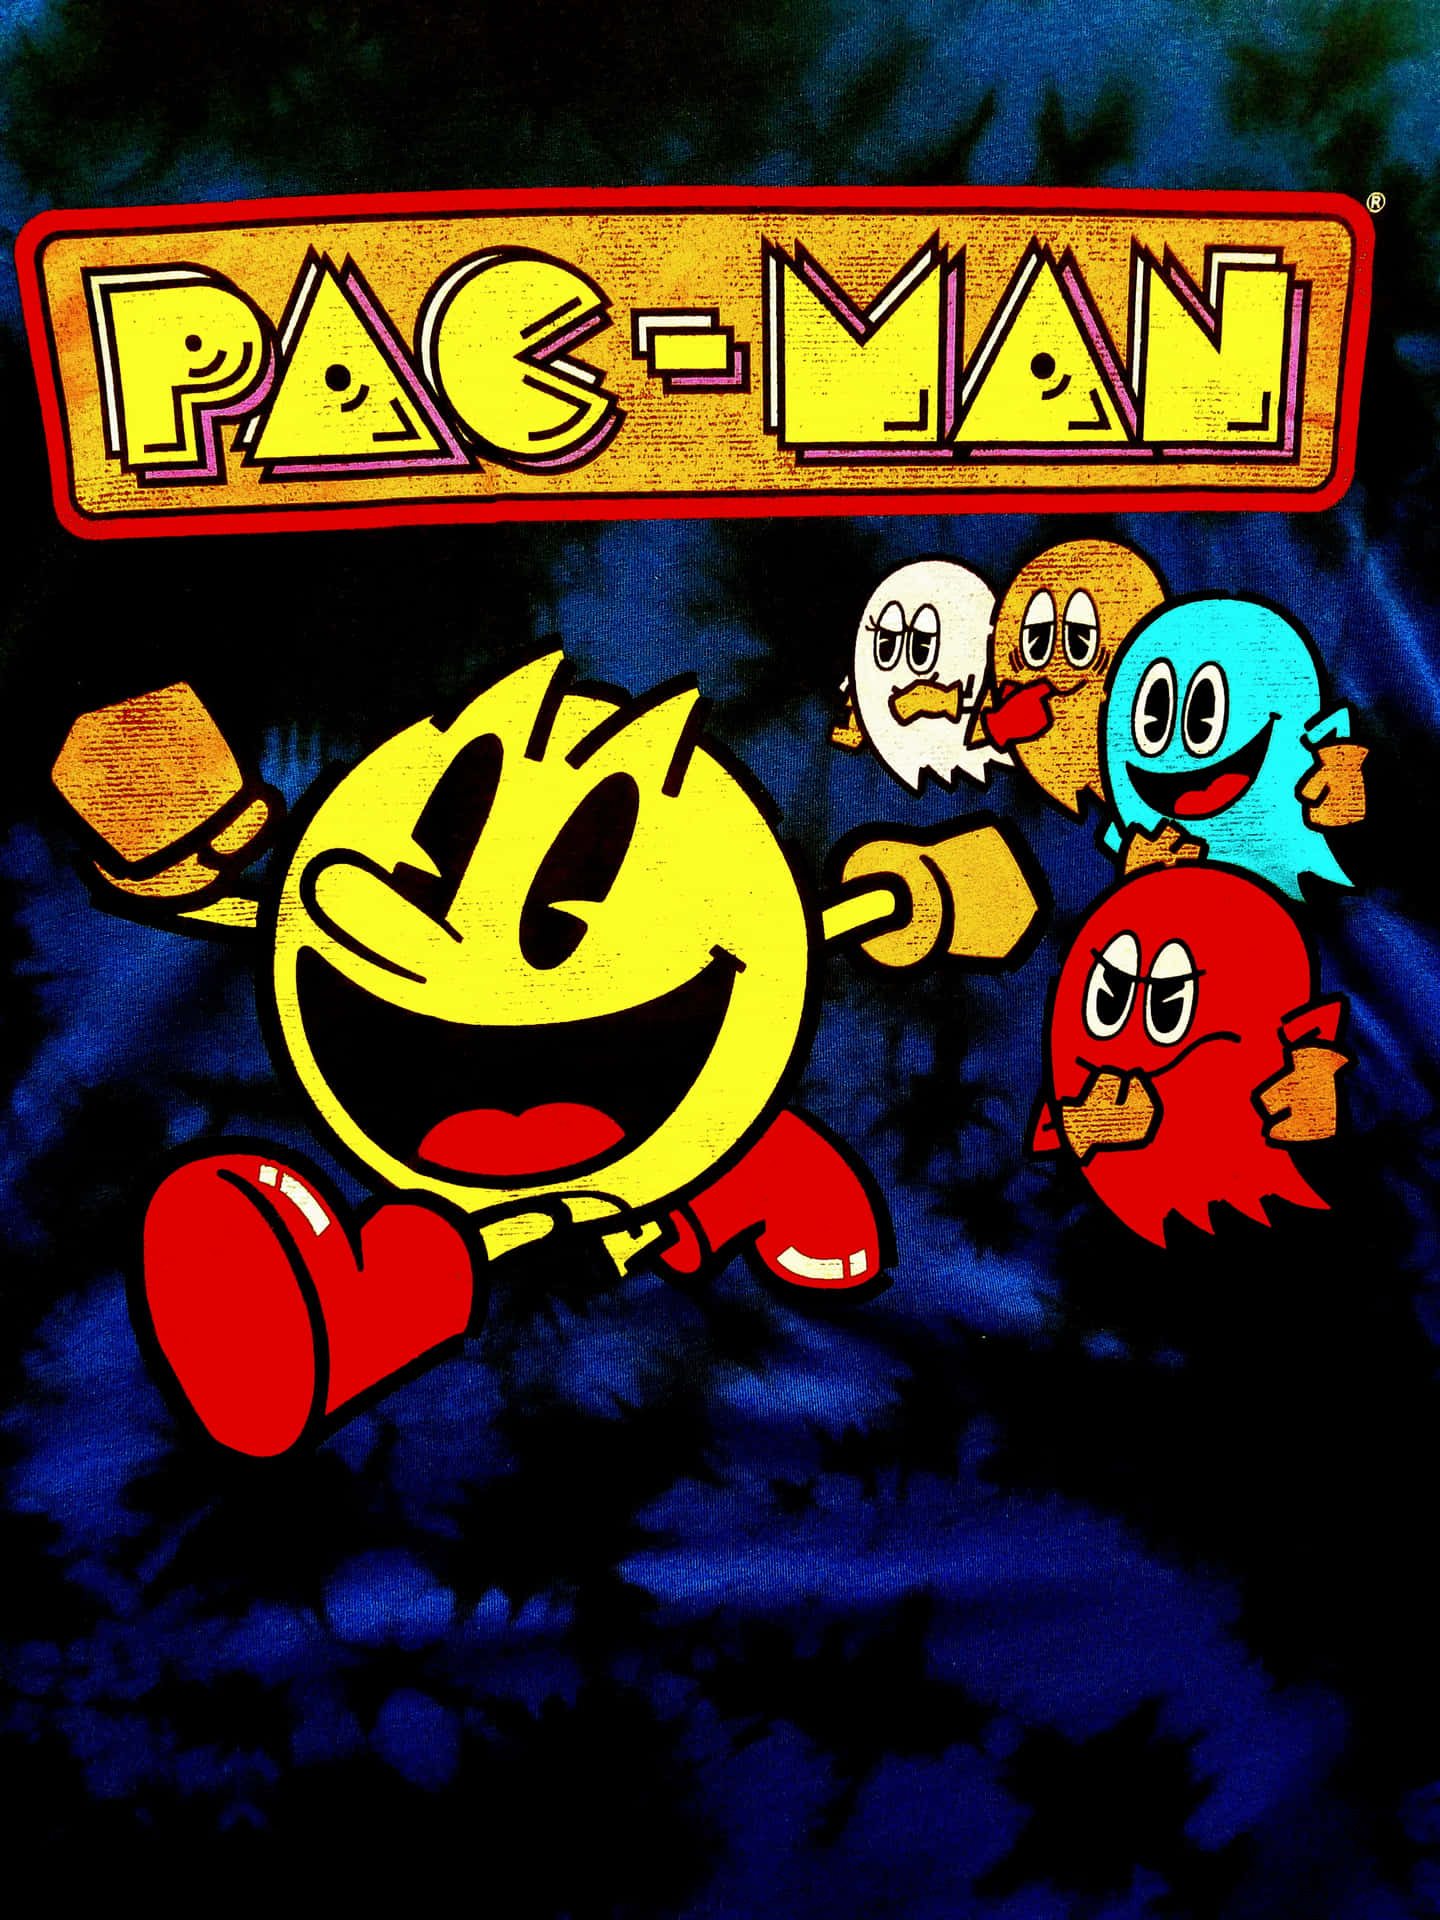 Retrogame Pac-man Running - Retrospelsättet Pac-man Som Springer Wallpaper